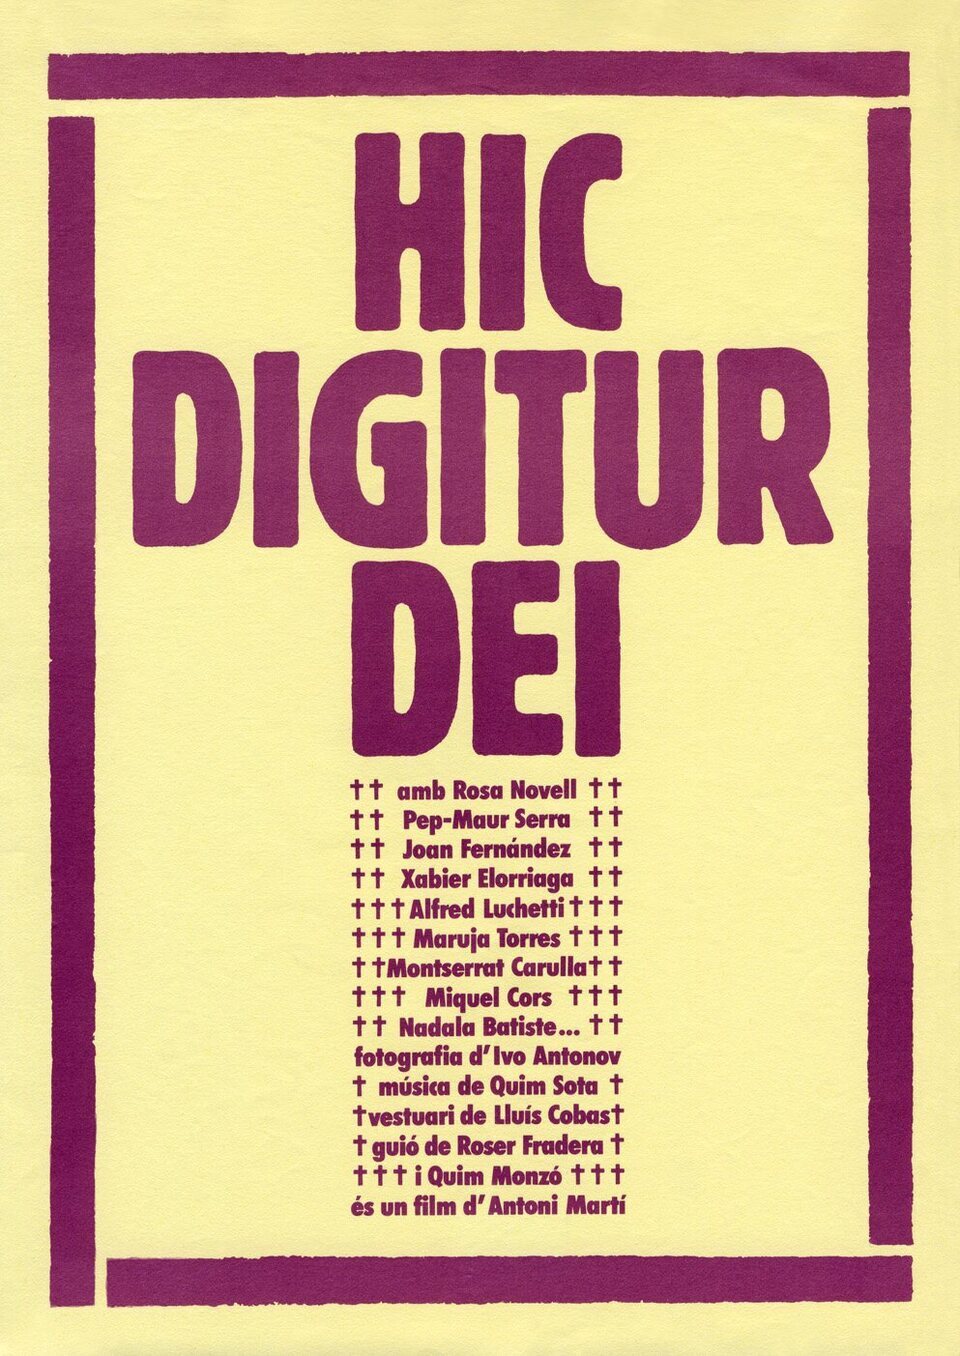 Poster of Hic Digitur Dei - España